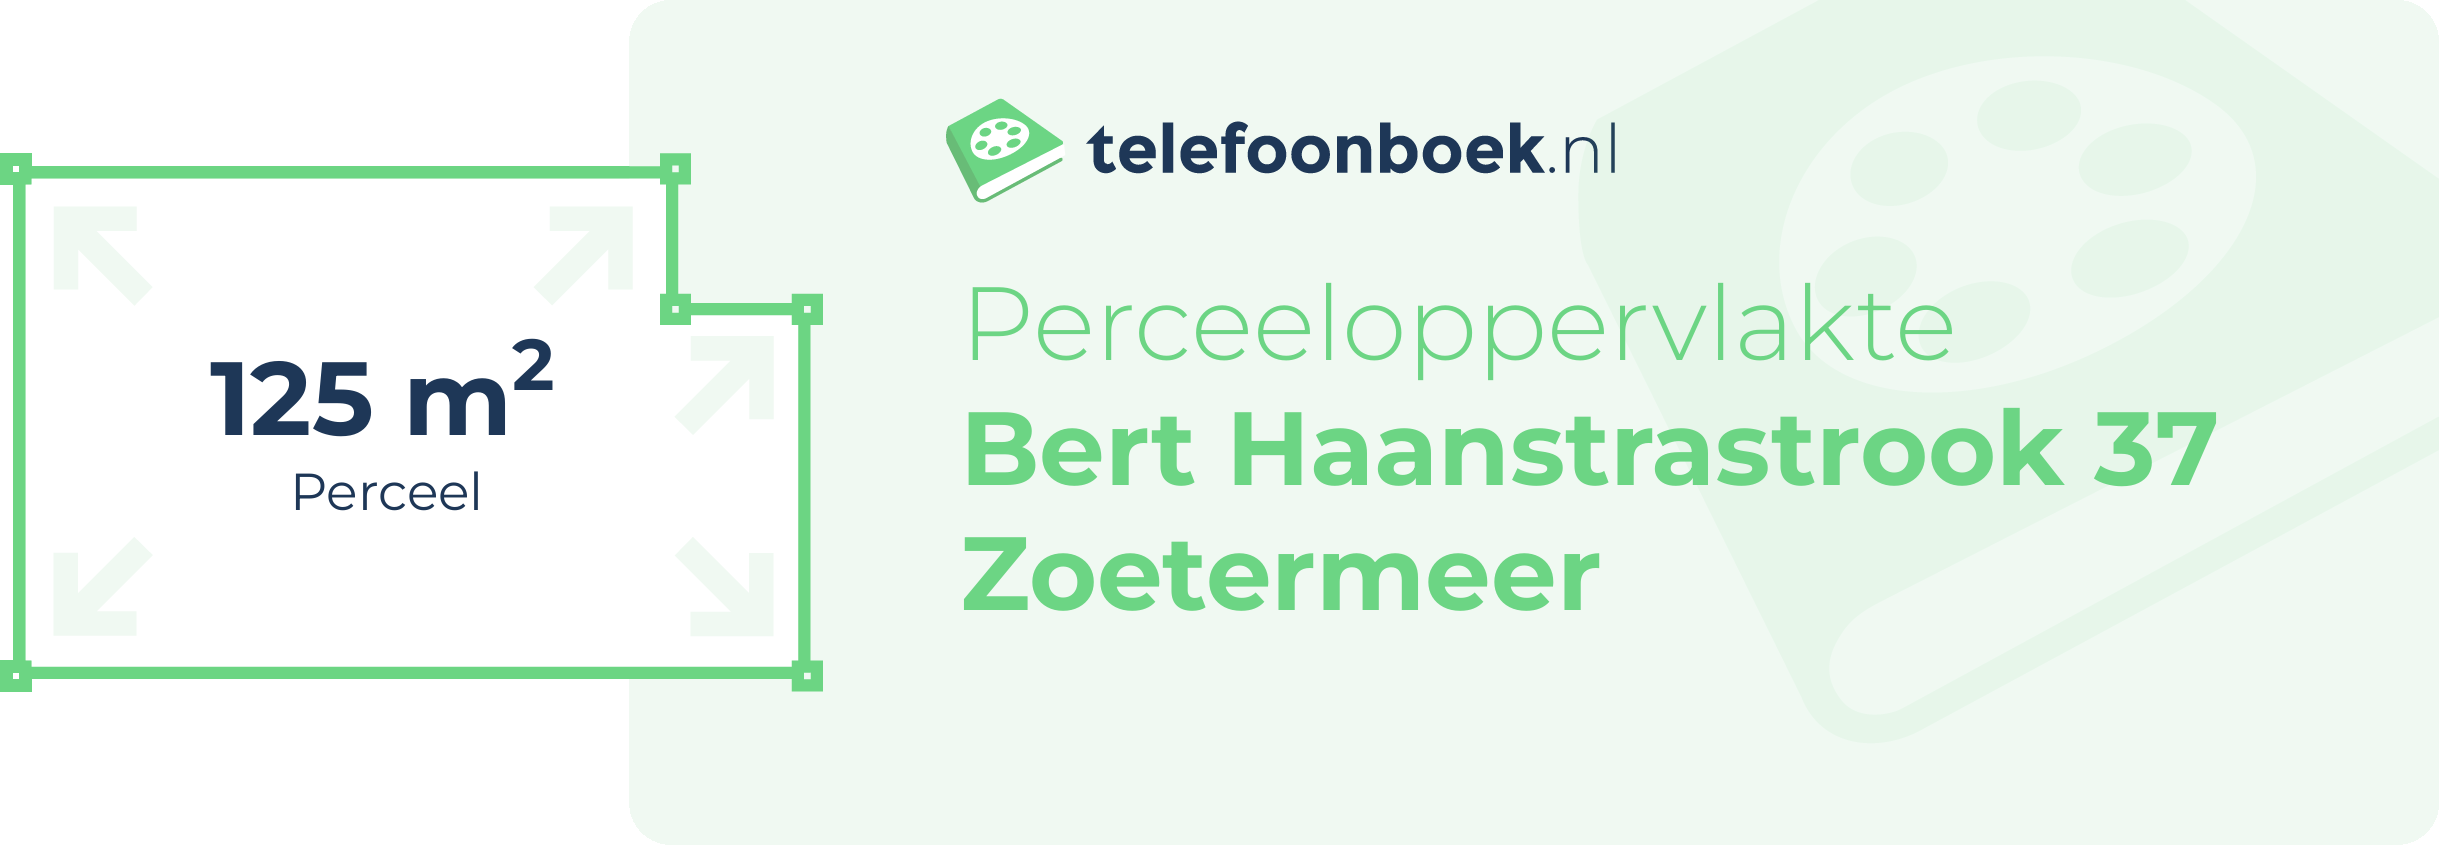 Perceeloppervlakte Bert Haanstrastrook 37 Zoetermeer